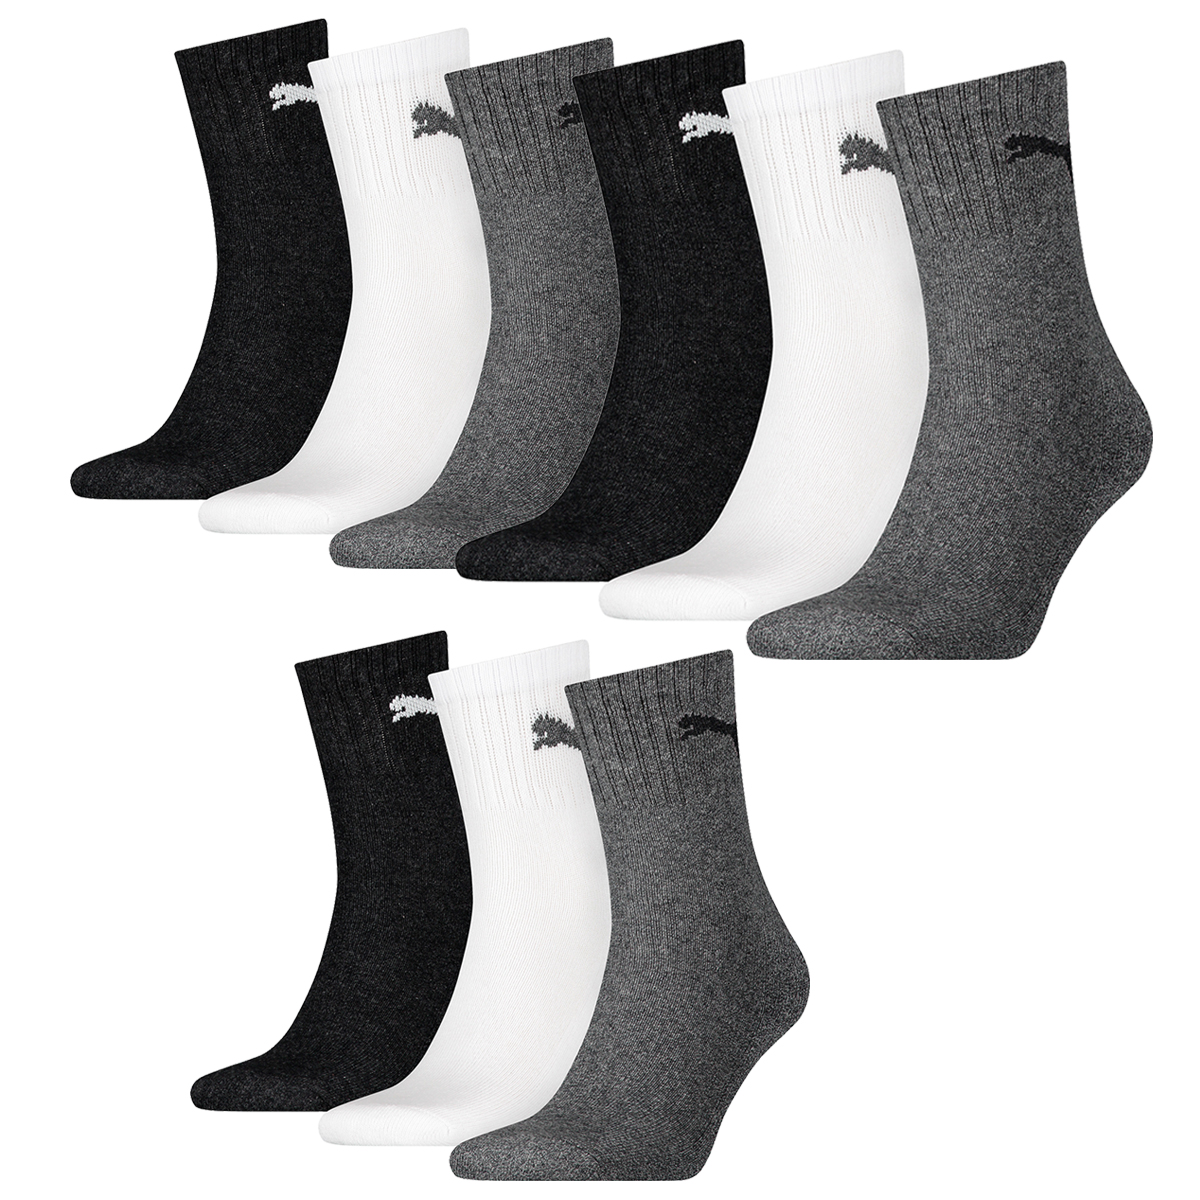 Puma Unisex Short Crew Socken Basic Sportsocken 12er Pack, Größe:39-42, Farbe:Grey/White/Black (882)